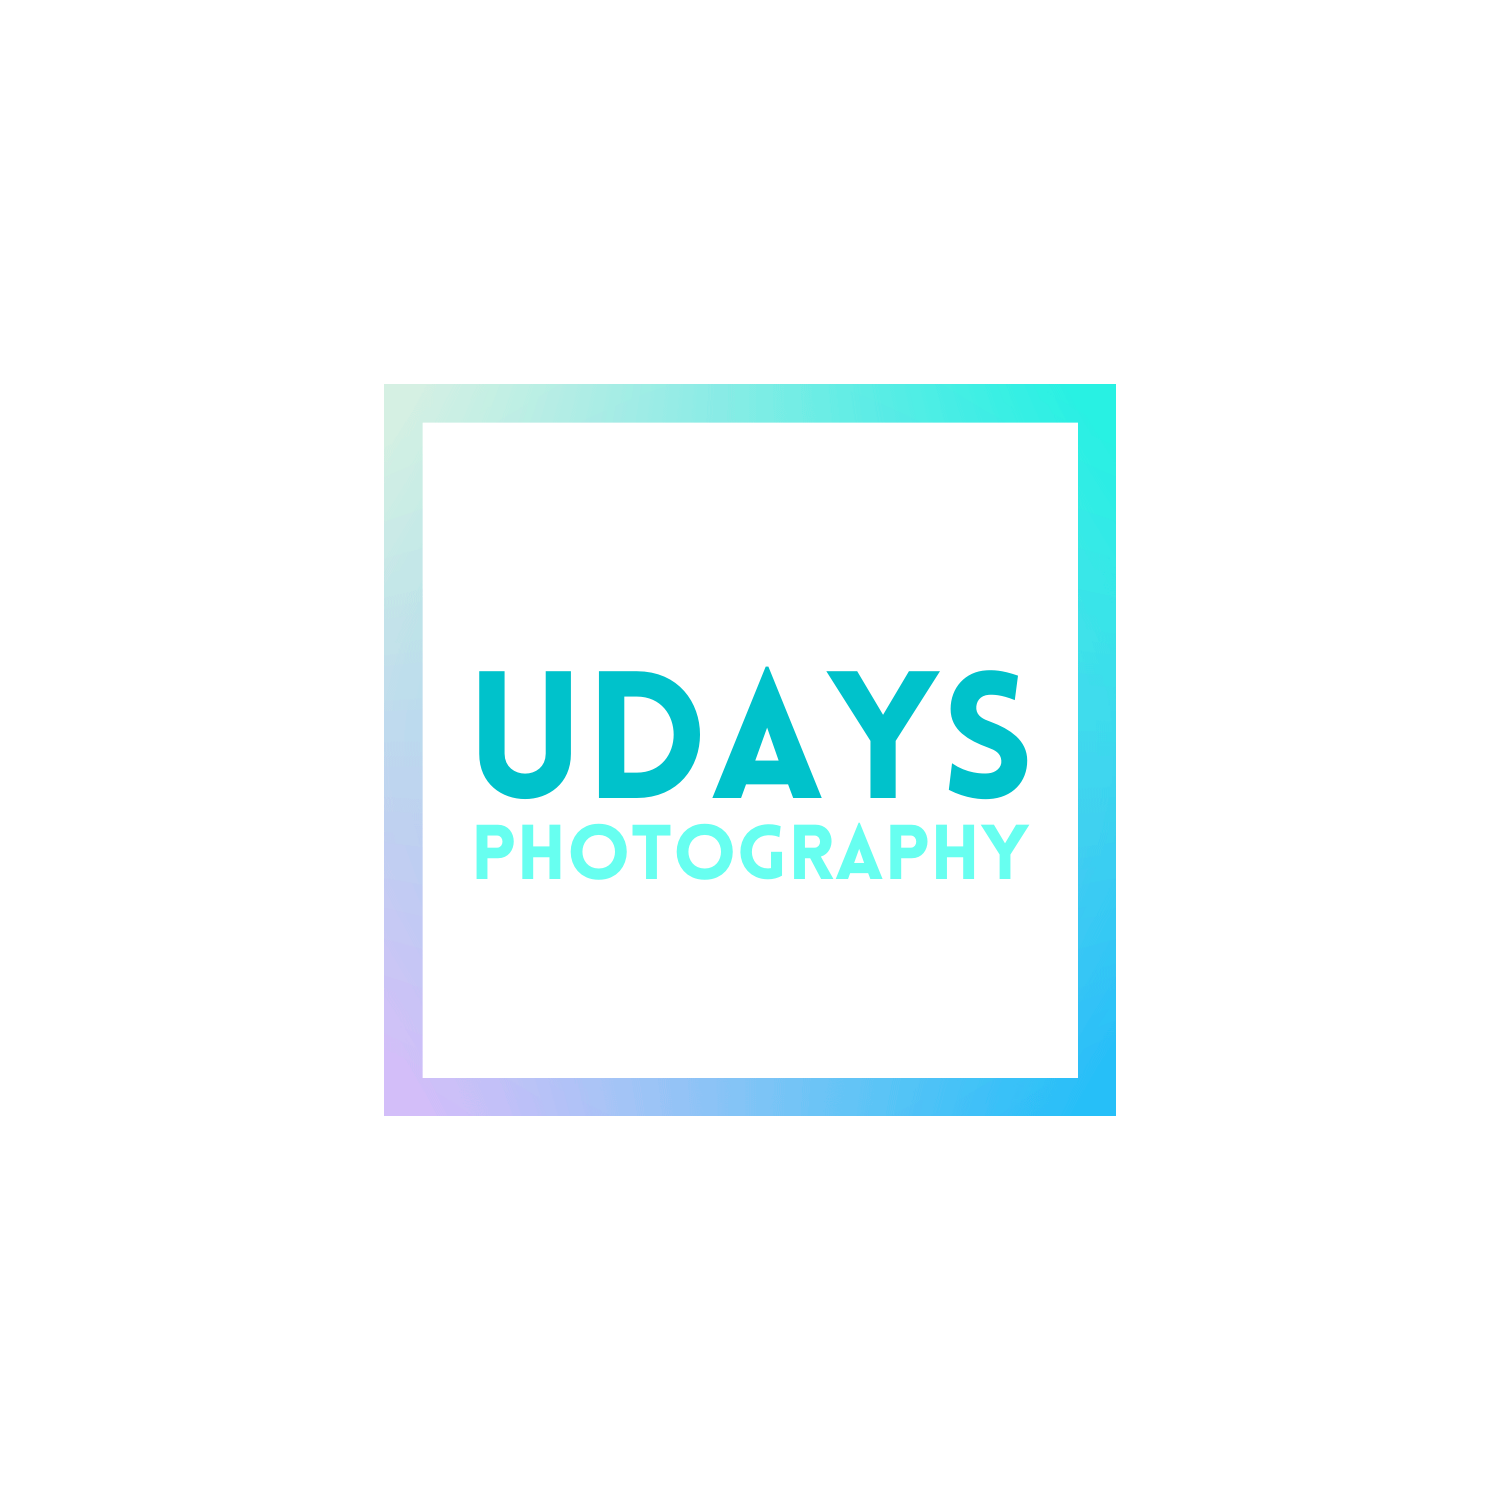 Udays Photography